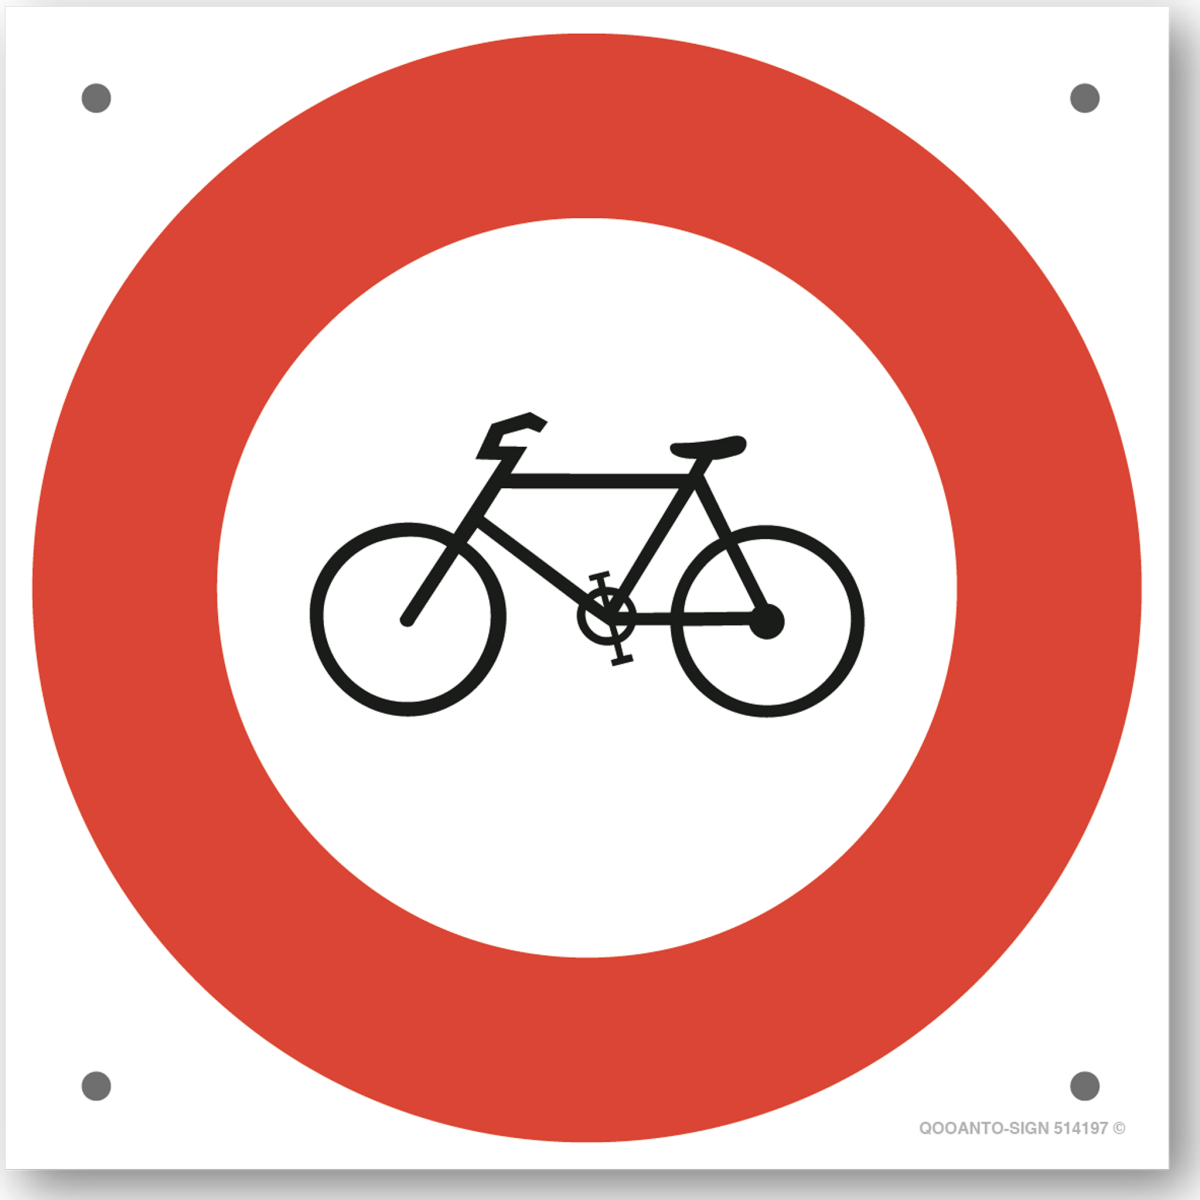 Verbot Für Fahrräder Und Motorfahrräder Verkehrsschild oder Aufkleber aus Alu-Verbund oder Selbstklebefolie mit UV-Schutz - QOOANTO-SIGN